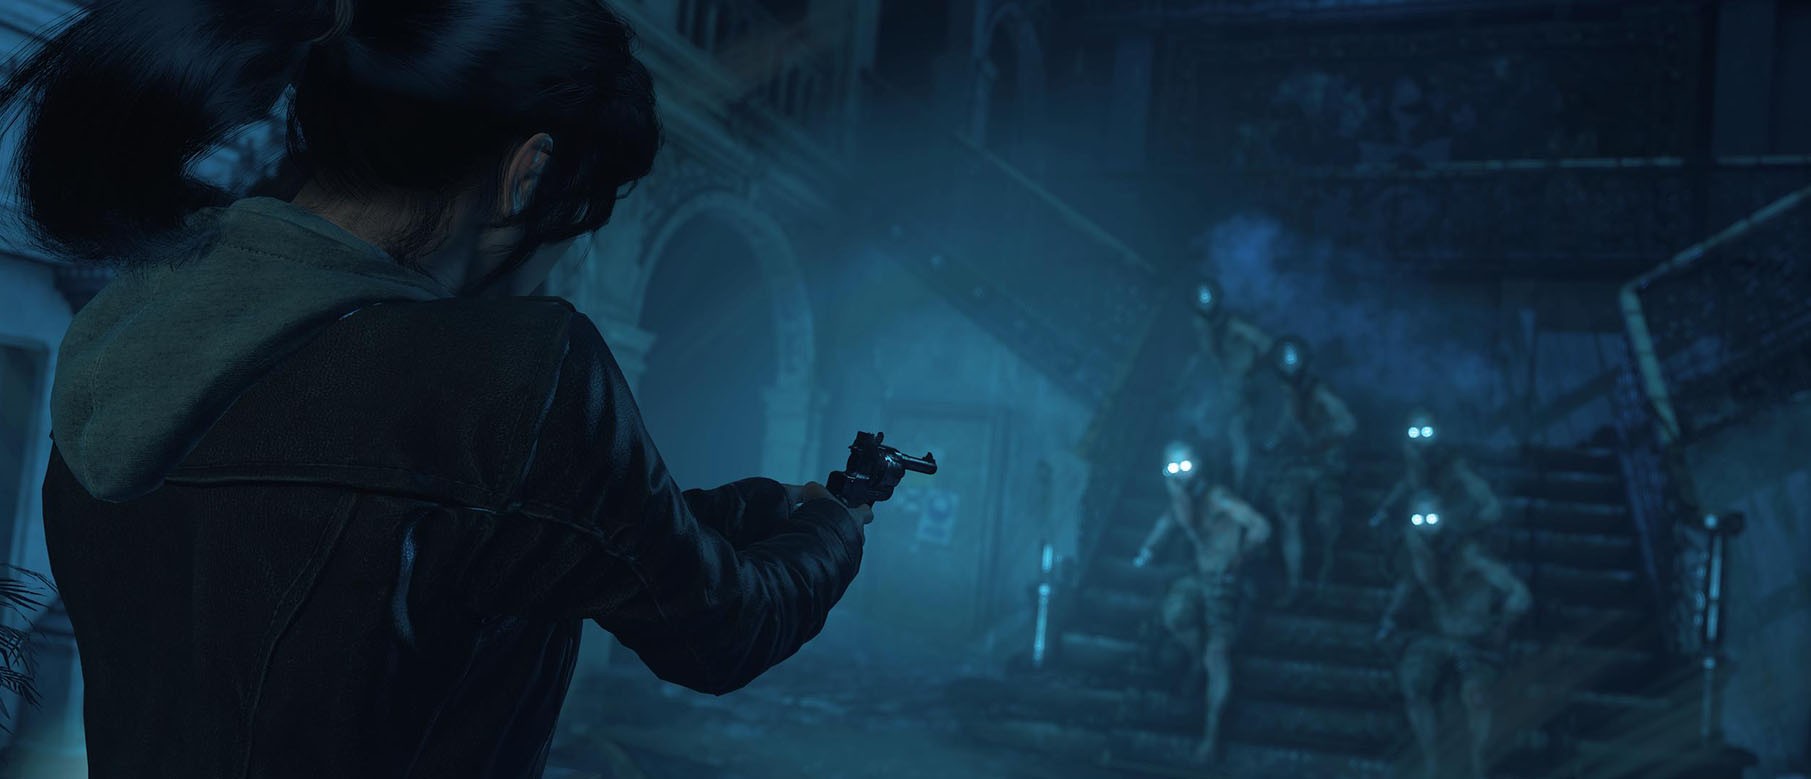 Изображение к Reddit: Кто-то работал над презентацией для Shadow of the Tomb Raider в метро, новая игра?